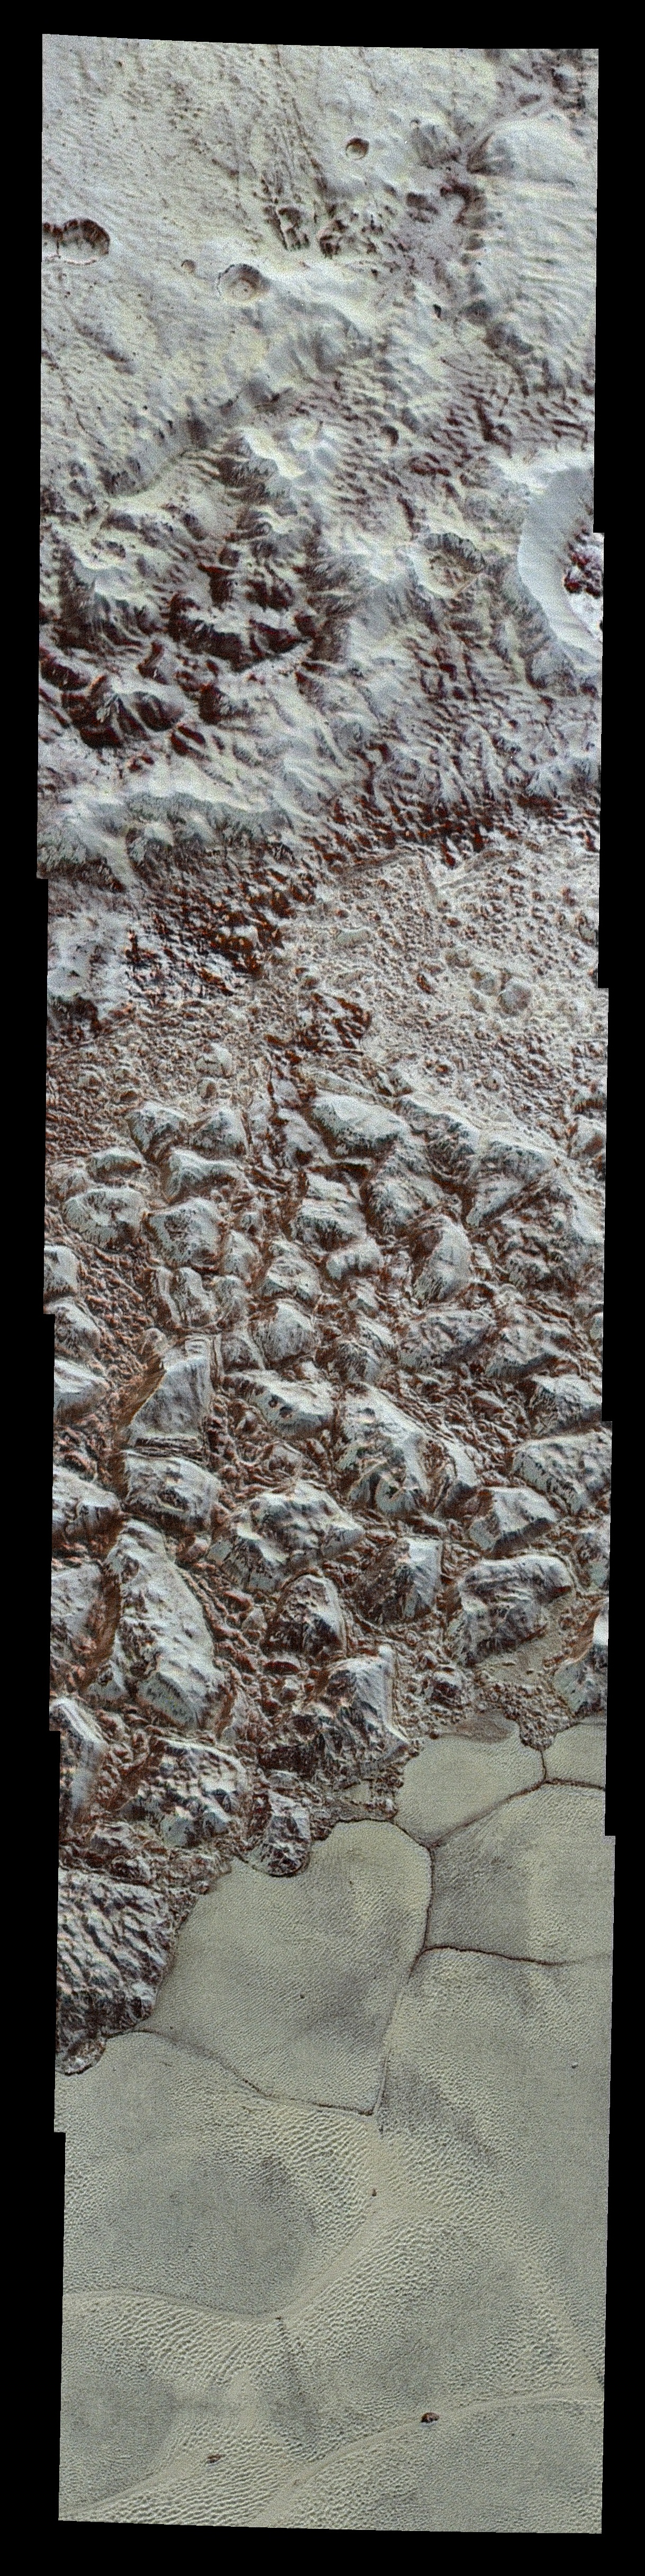 NASA выложило цветной снимок Плутона - 3